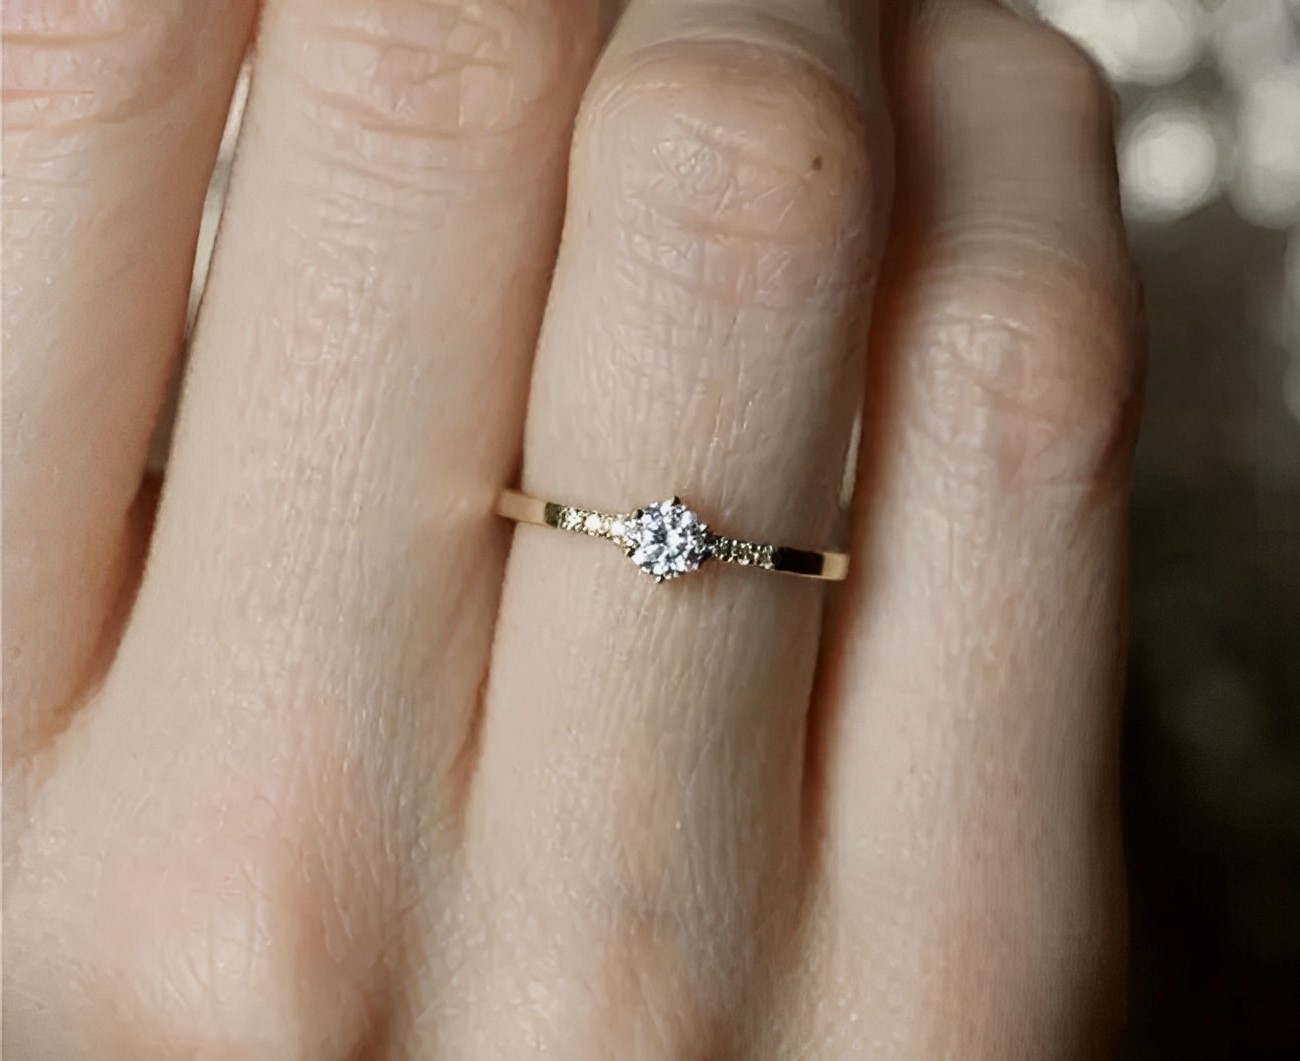 L'anello che la donna toscana ha ricevuto dal marito. Fonte: mumsnet.com